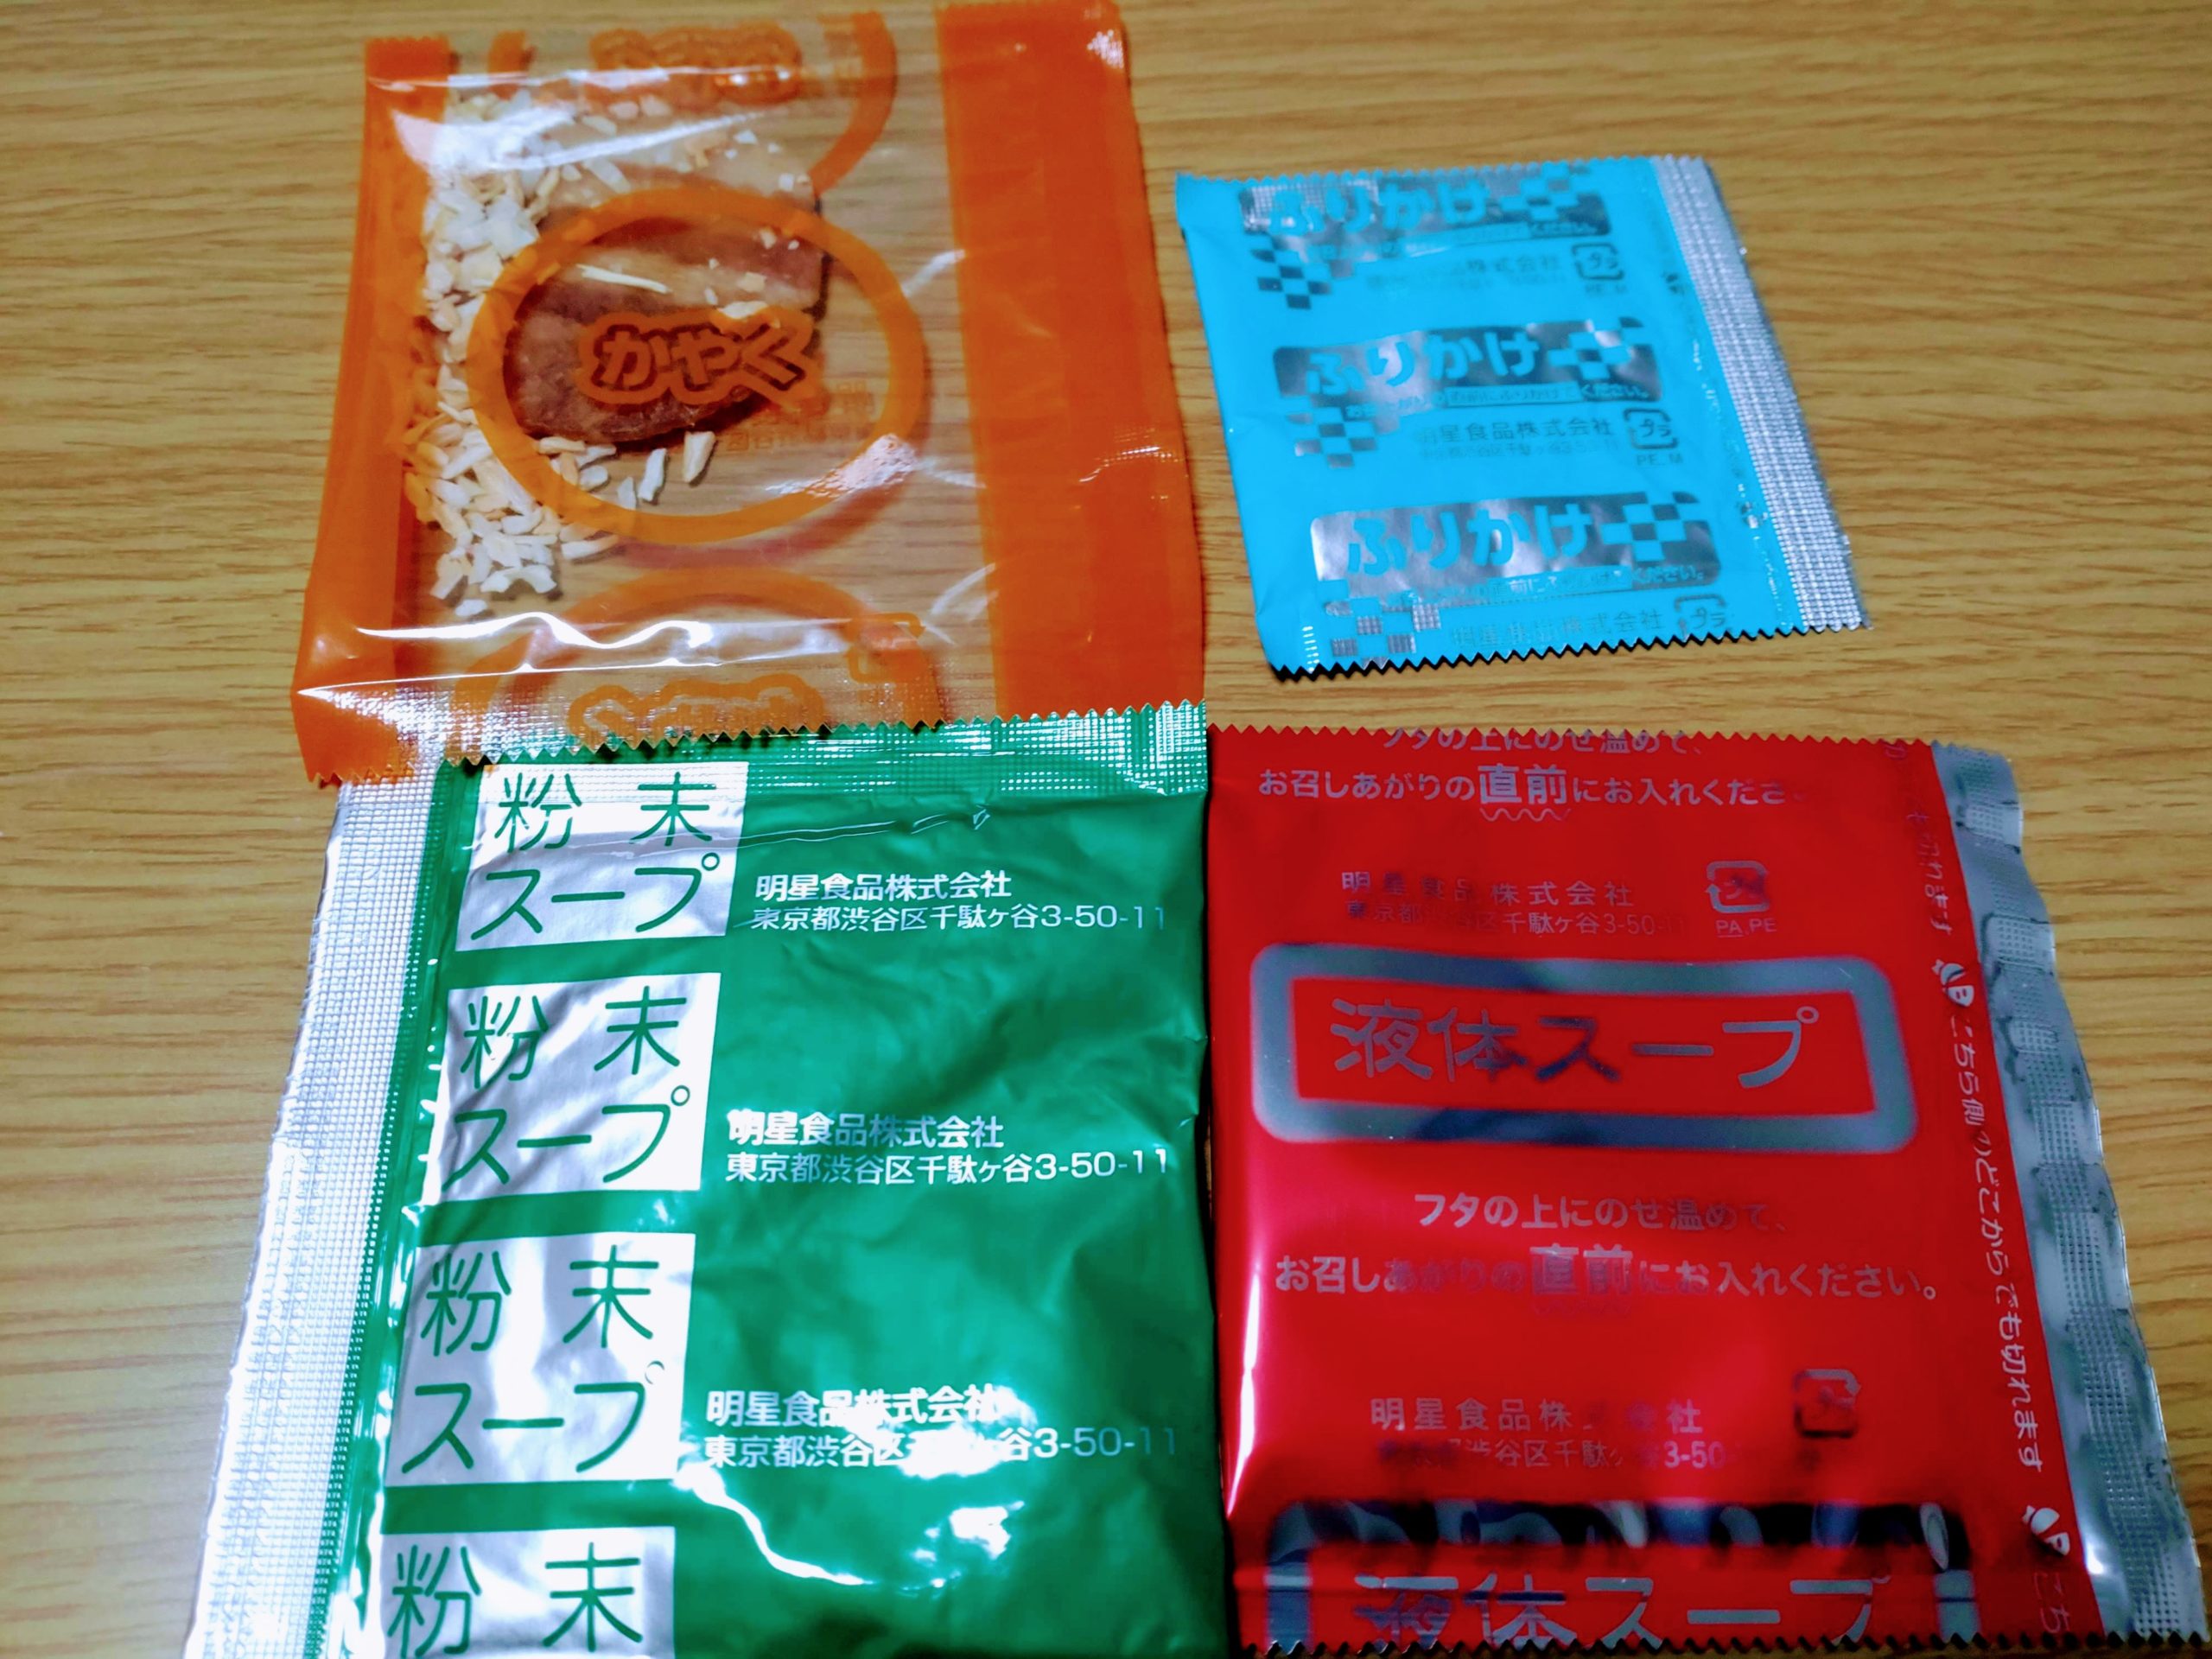 地域の名店 酒麺亭潤 燕三条系醤油ラーメンの内容物